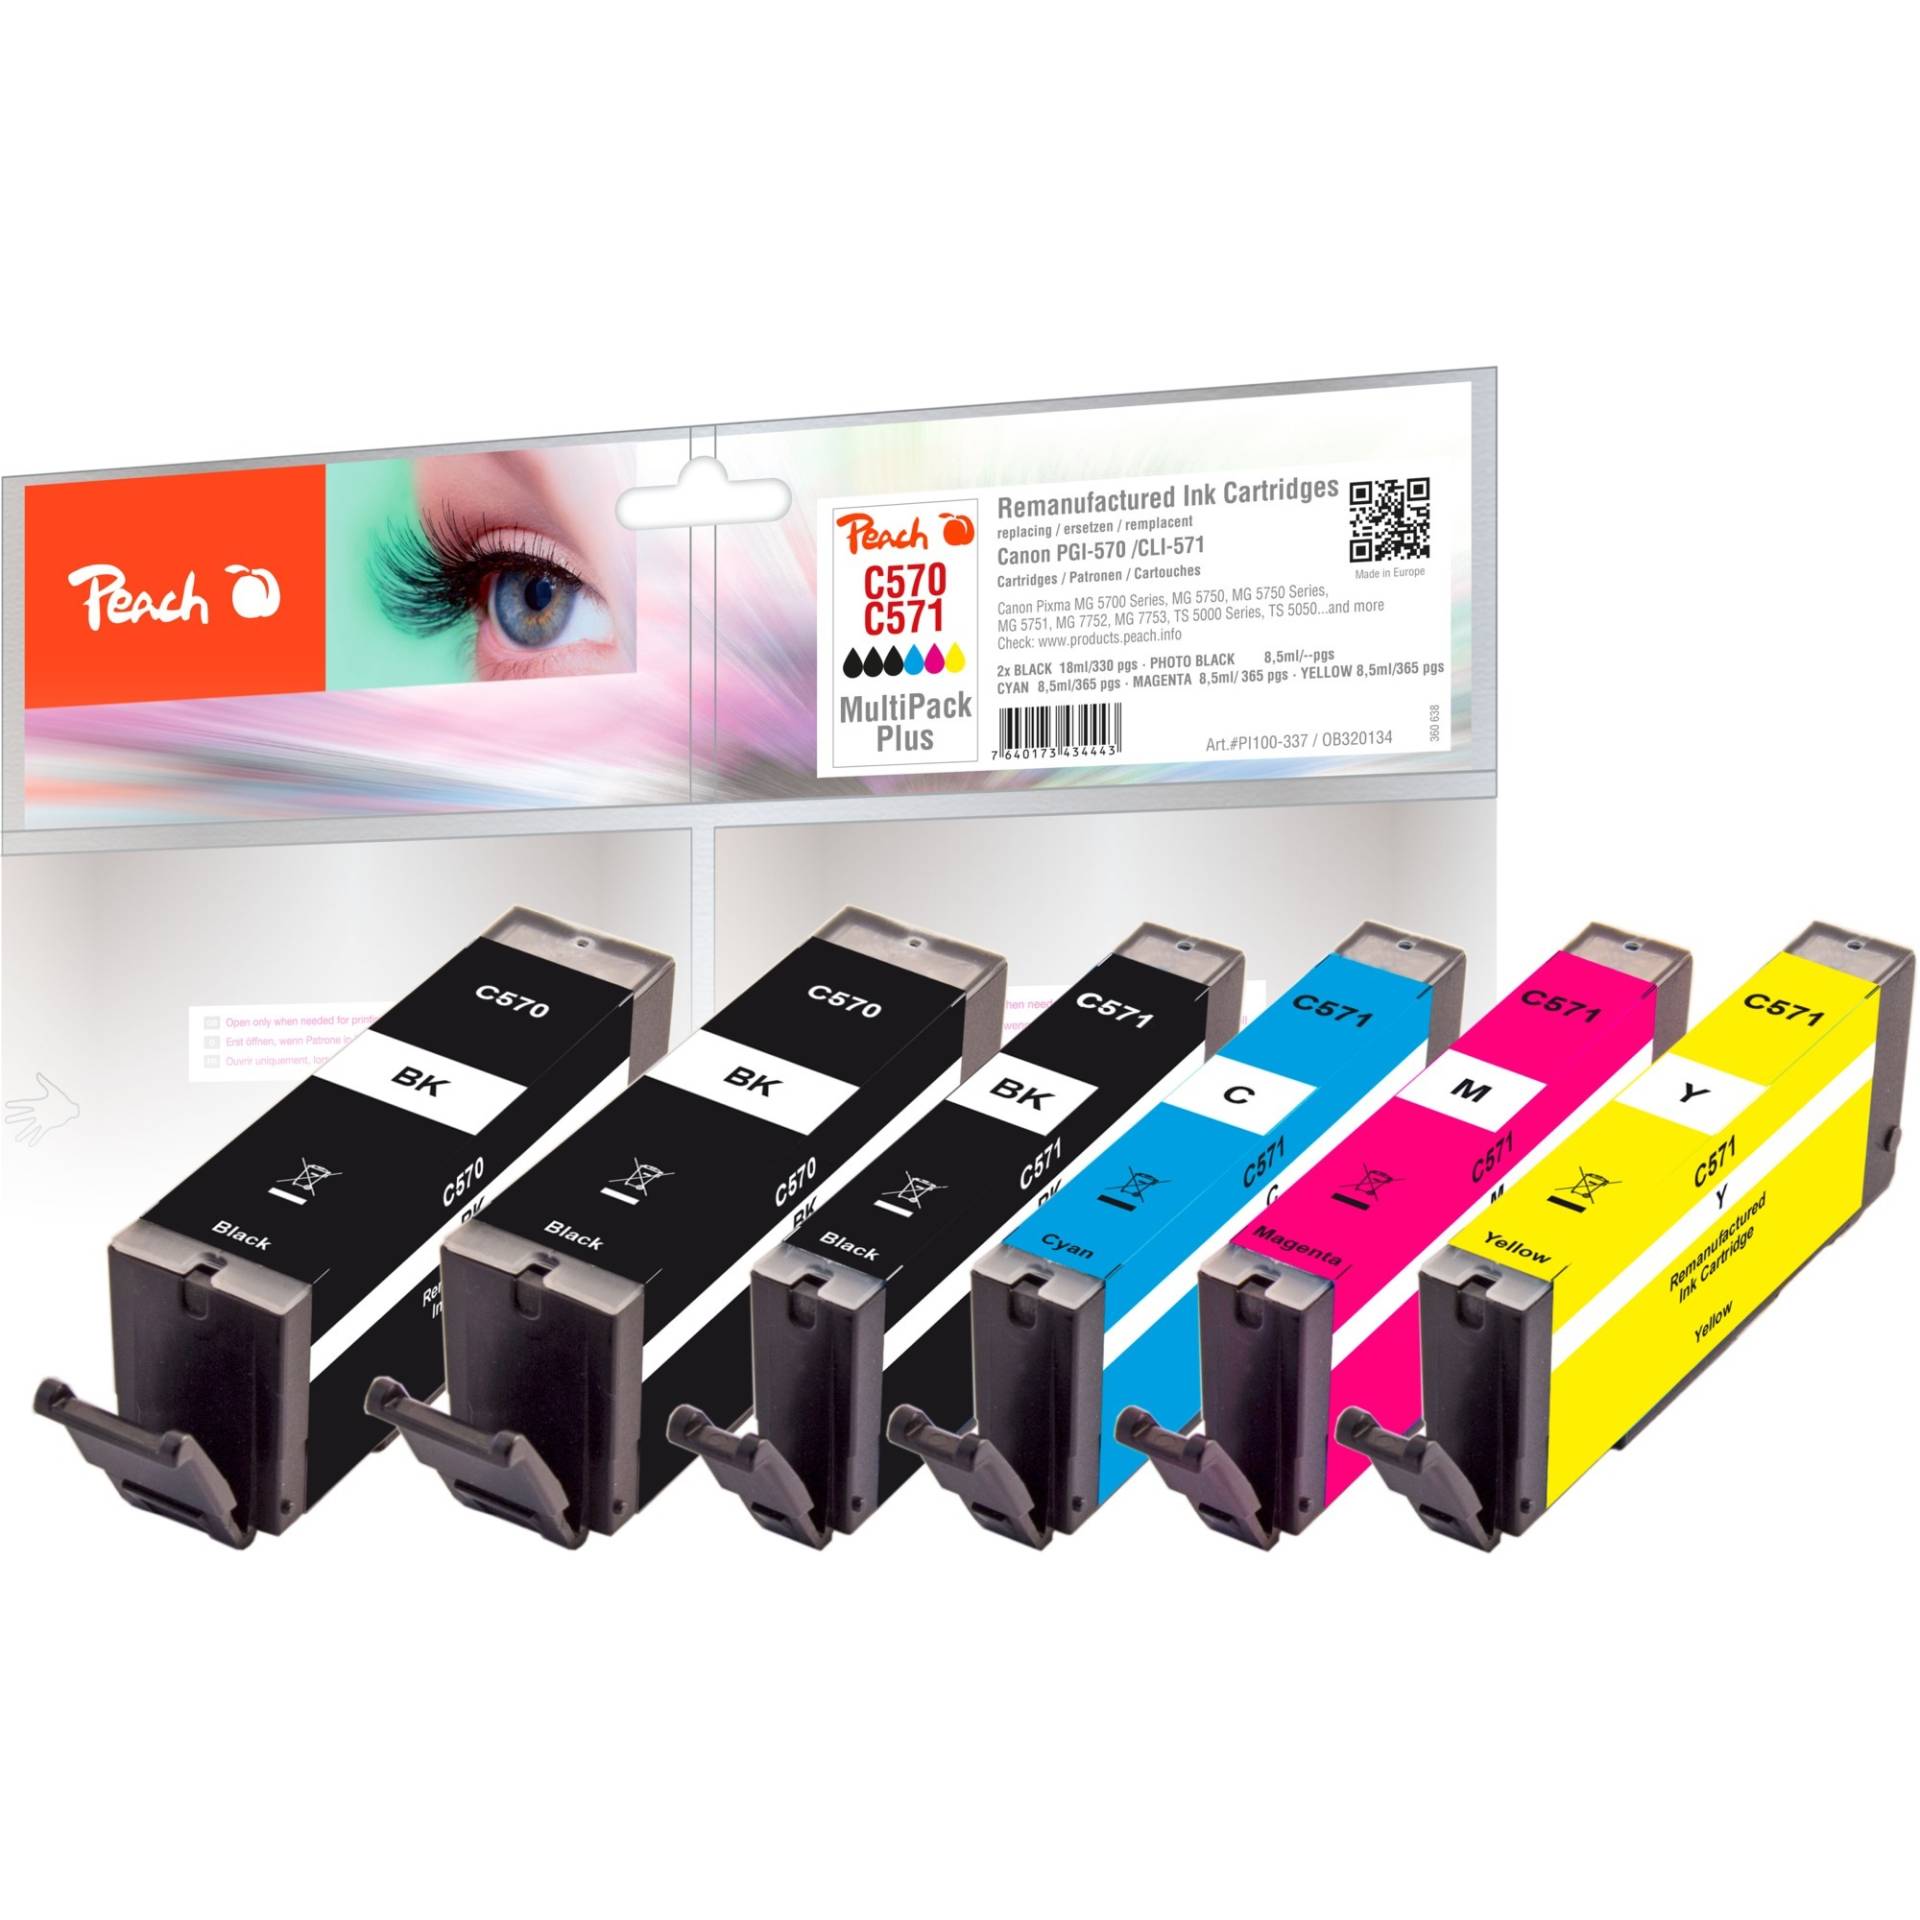 Tinte Spar Pack Plus PI100-328 von Peach